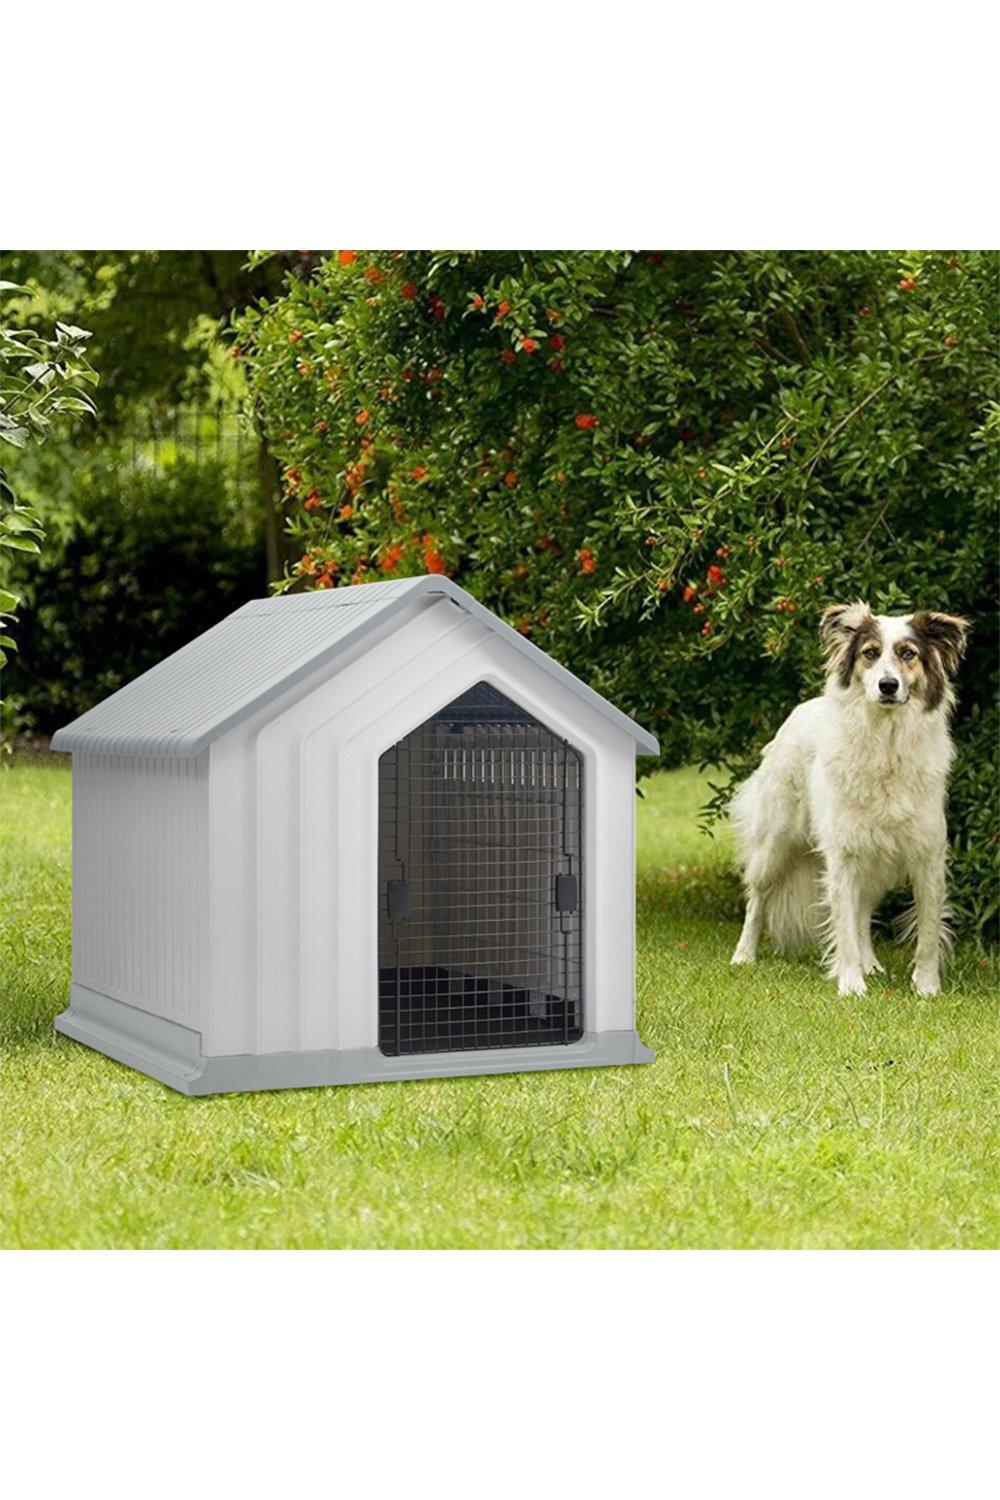 Waterproof Plastic Dog House Pet Kennel with Door